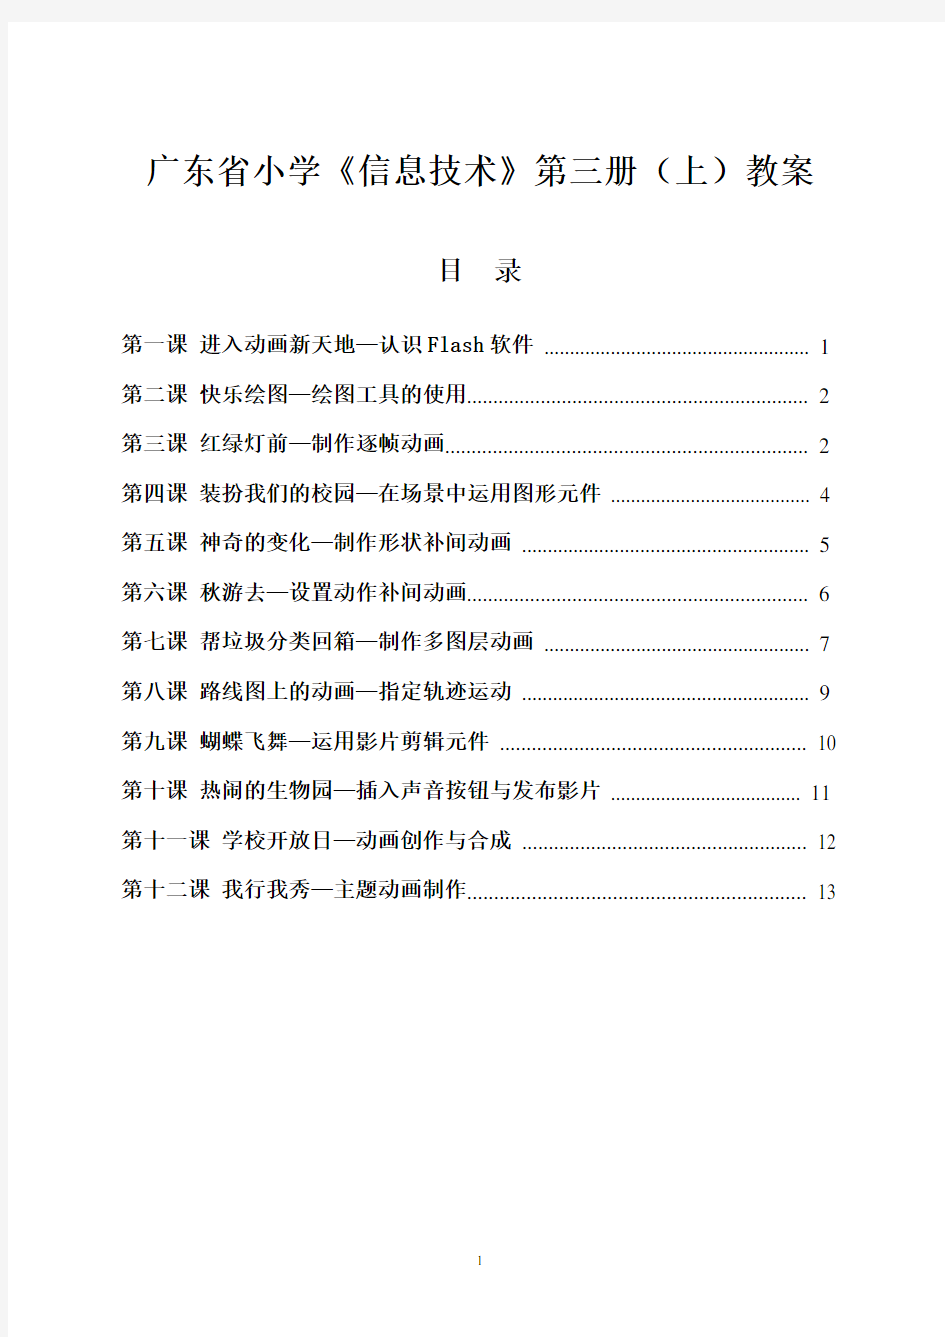 广东省小学《信息技术》第三册(上)教案